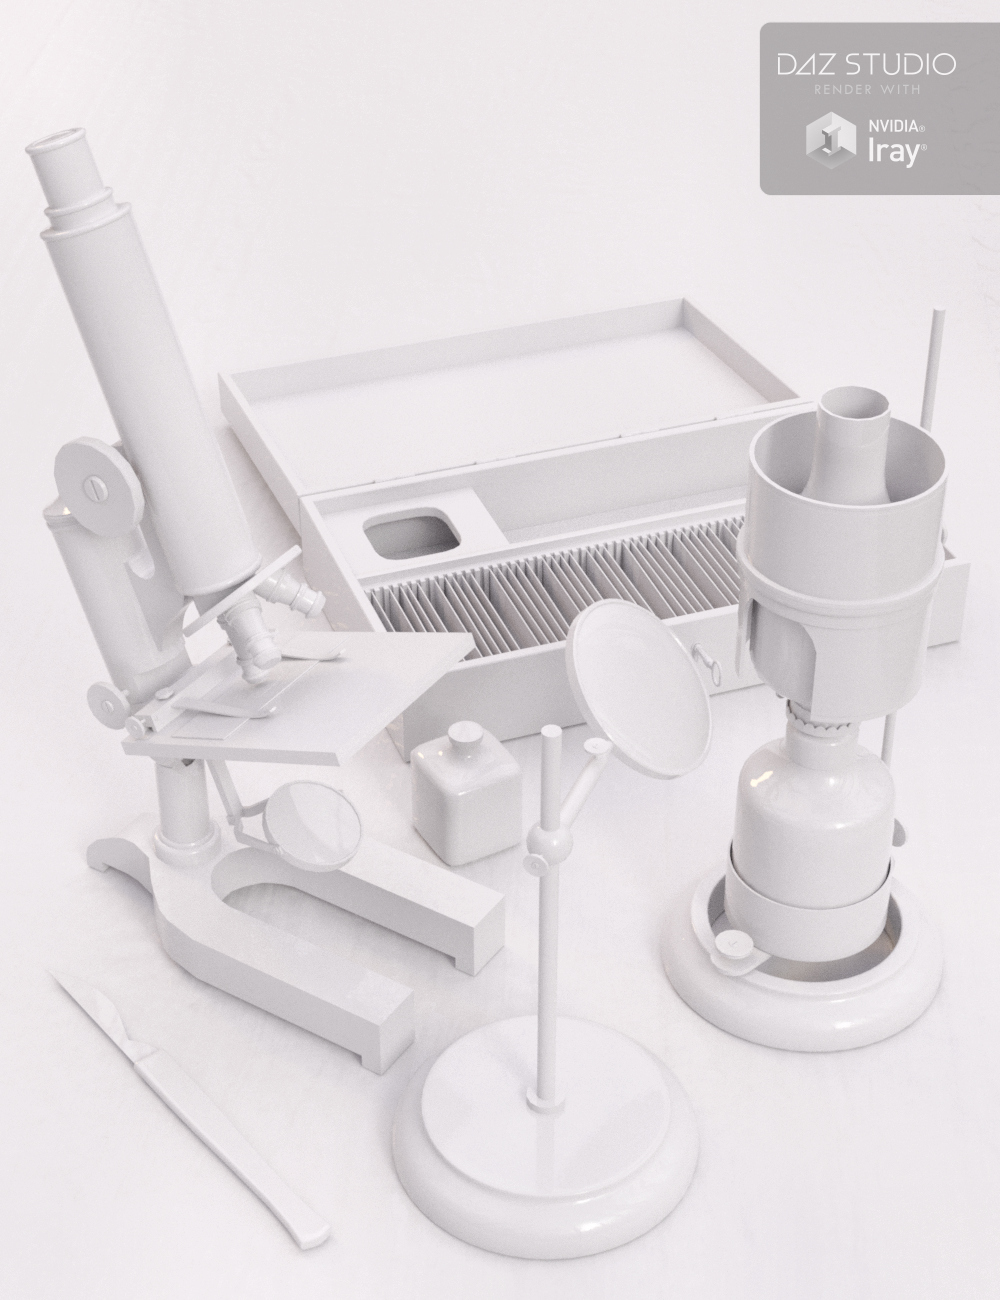 Victorian Microscopy by: Merlin Studios, 3D Models by Daz 3D